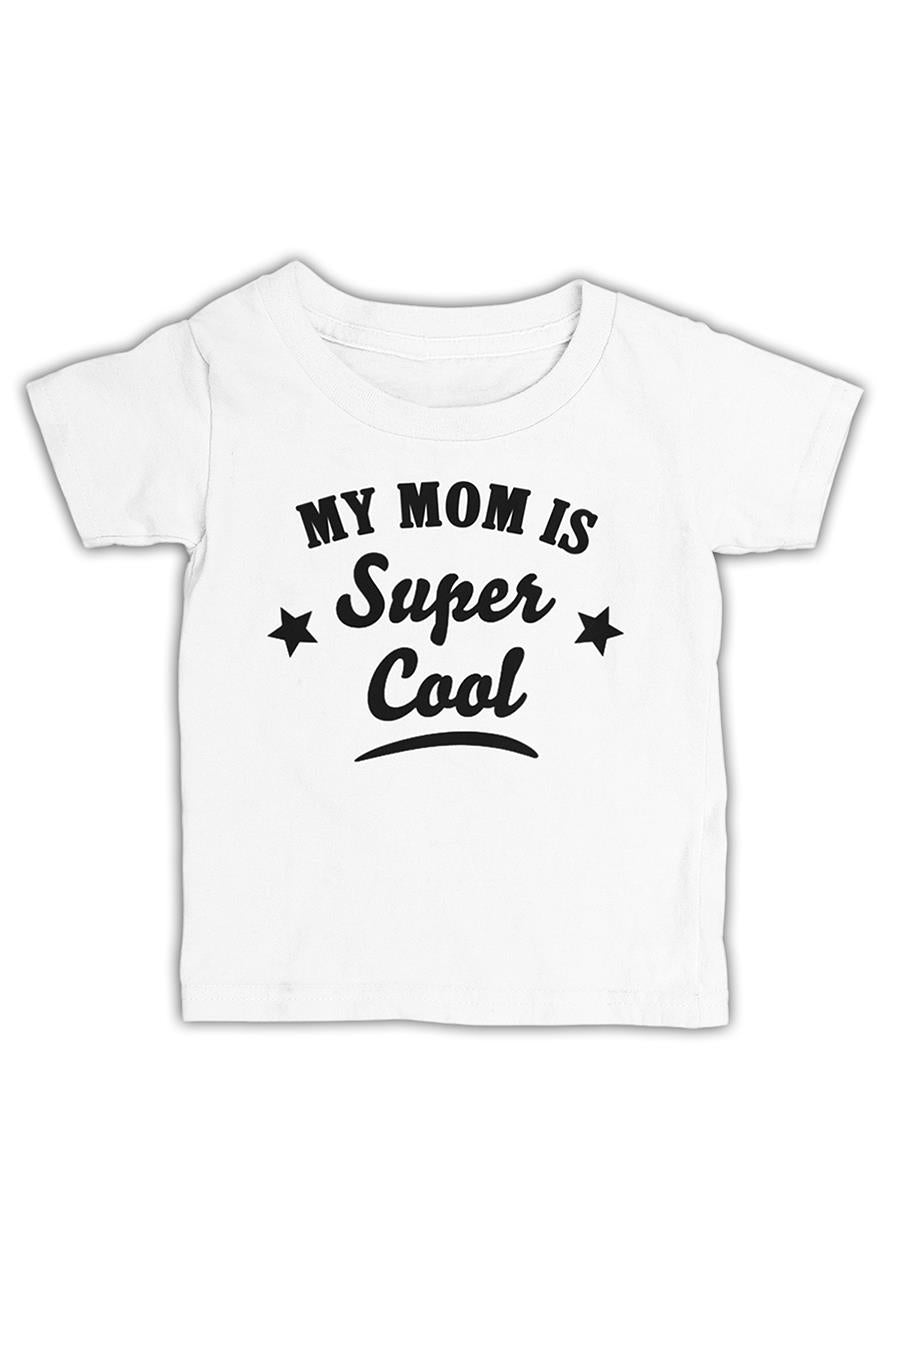 Super Cool Mom White Kids Tshirt